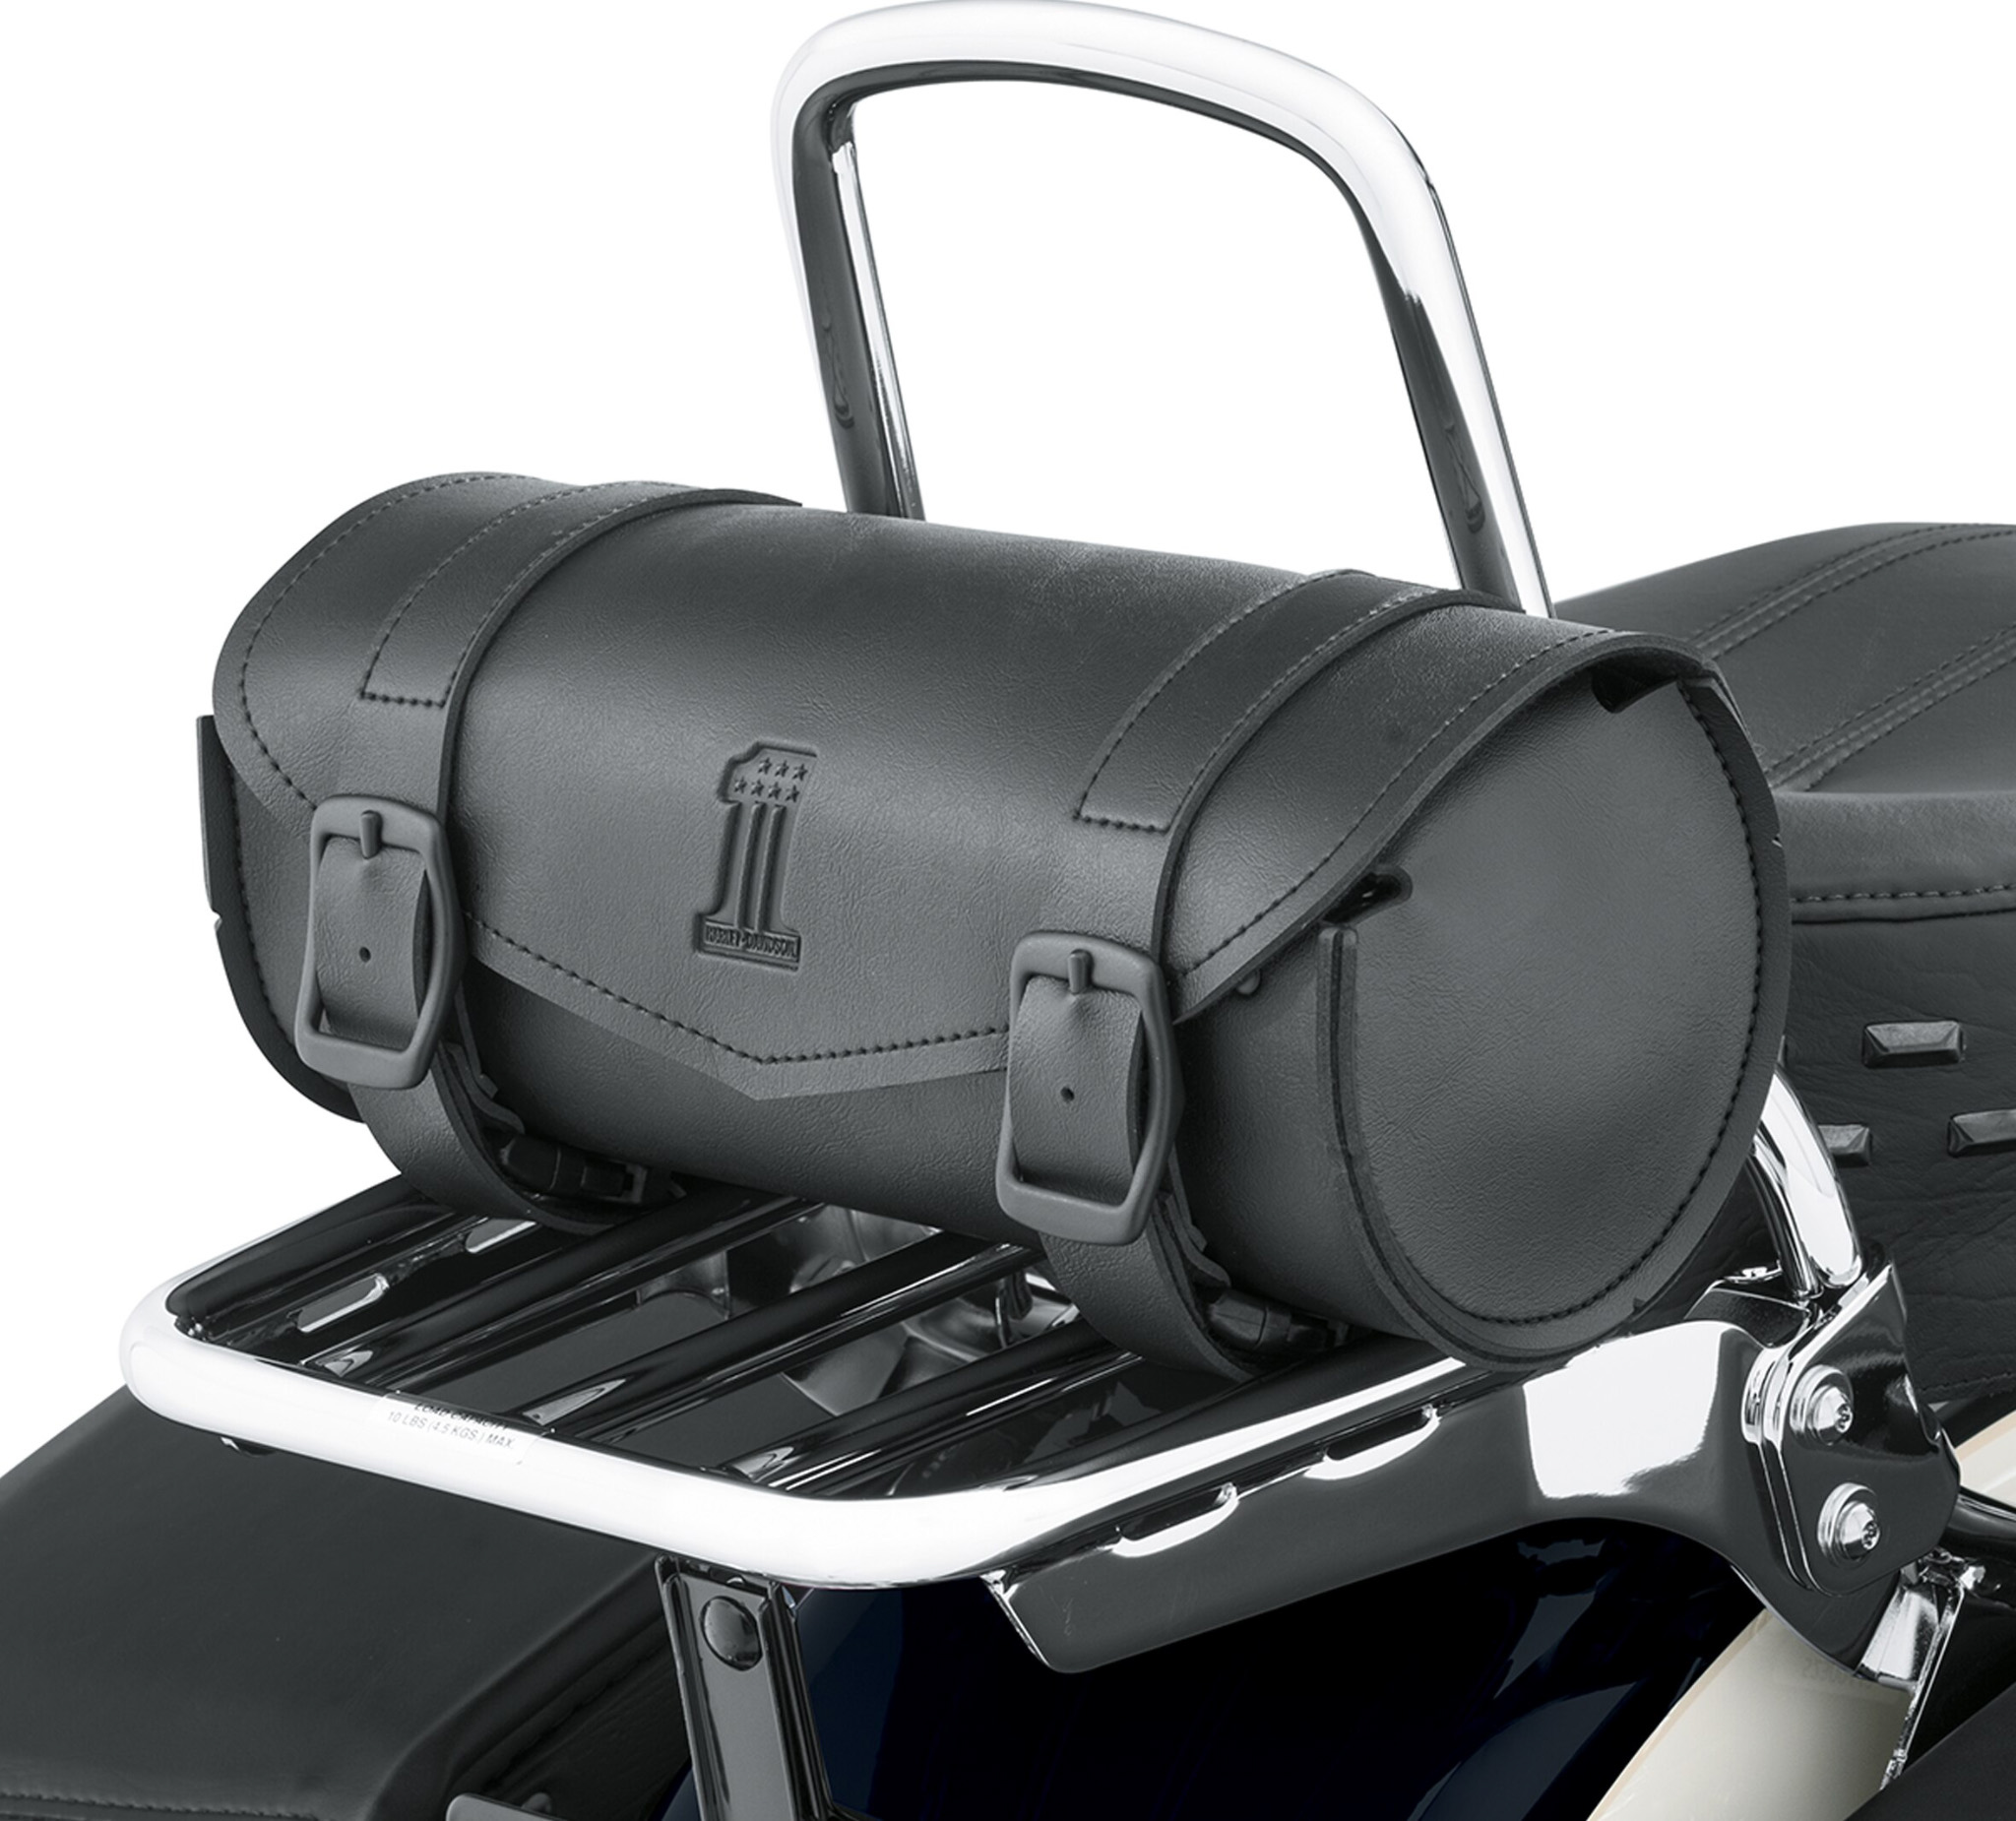 HDMC Messenger Bag - Black/Silver 93300099 | Harley-Davidson IN